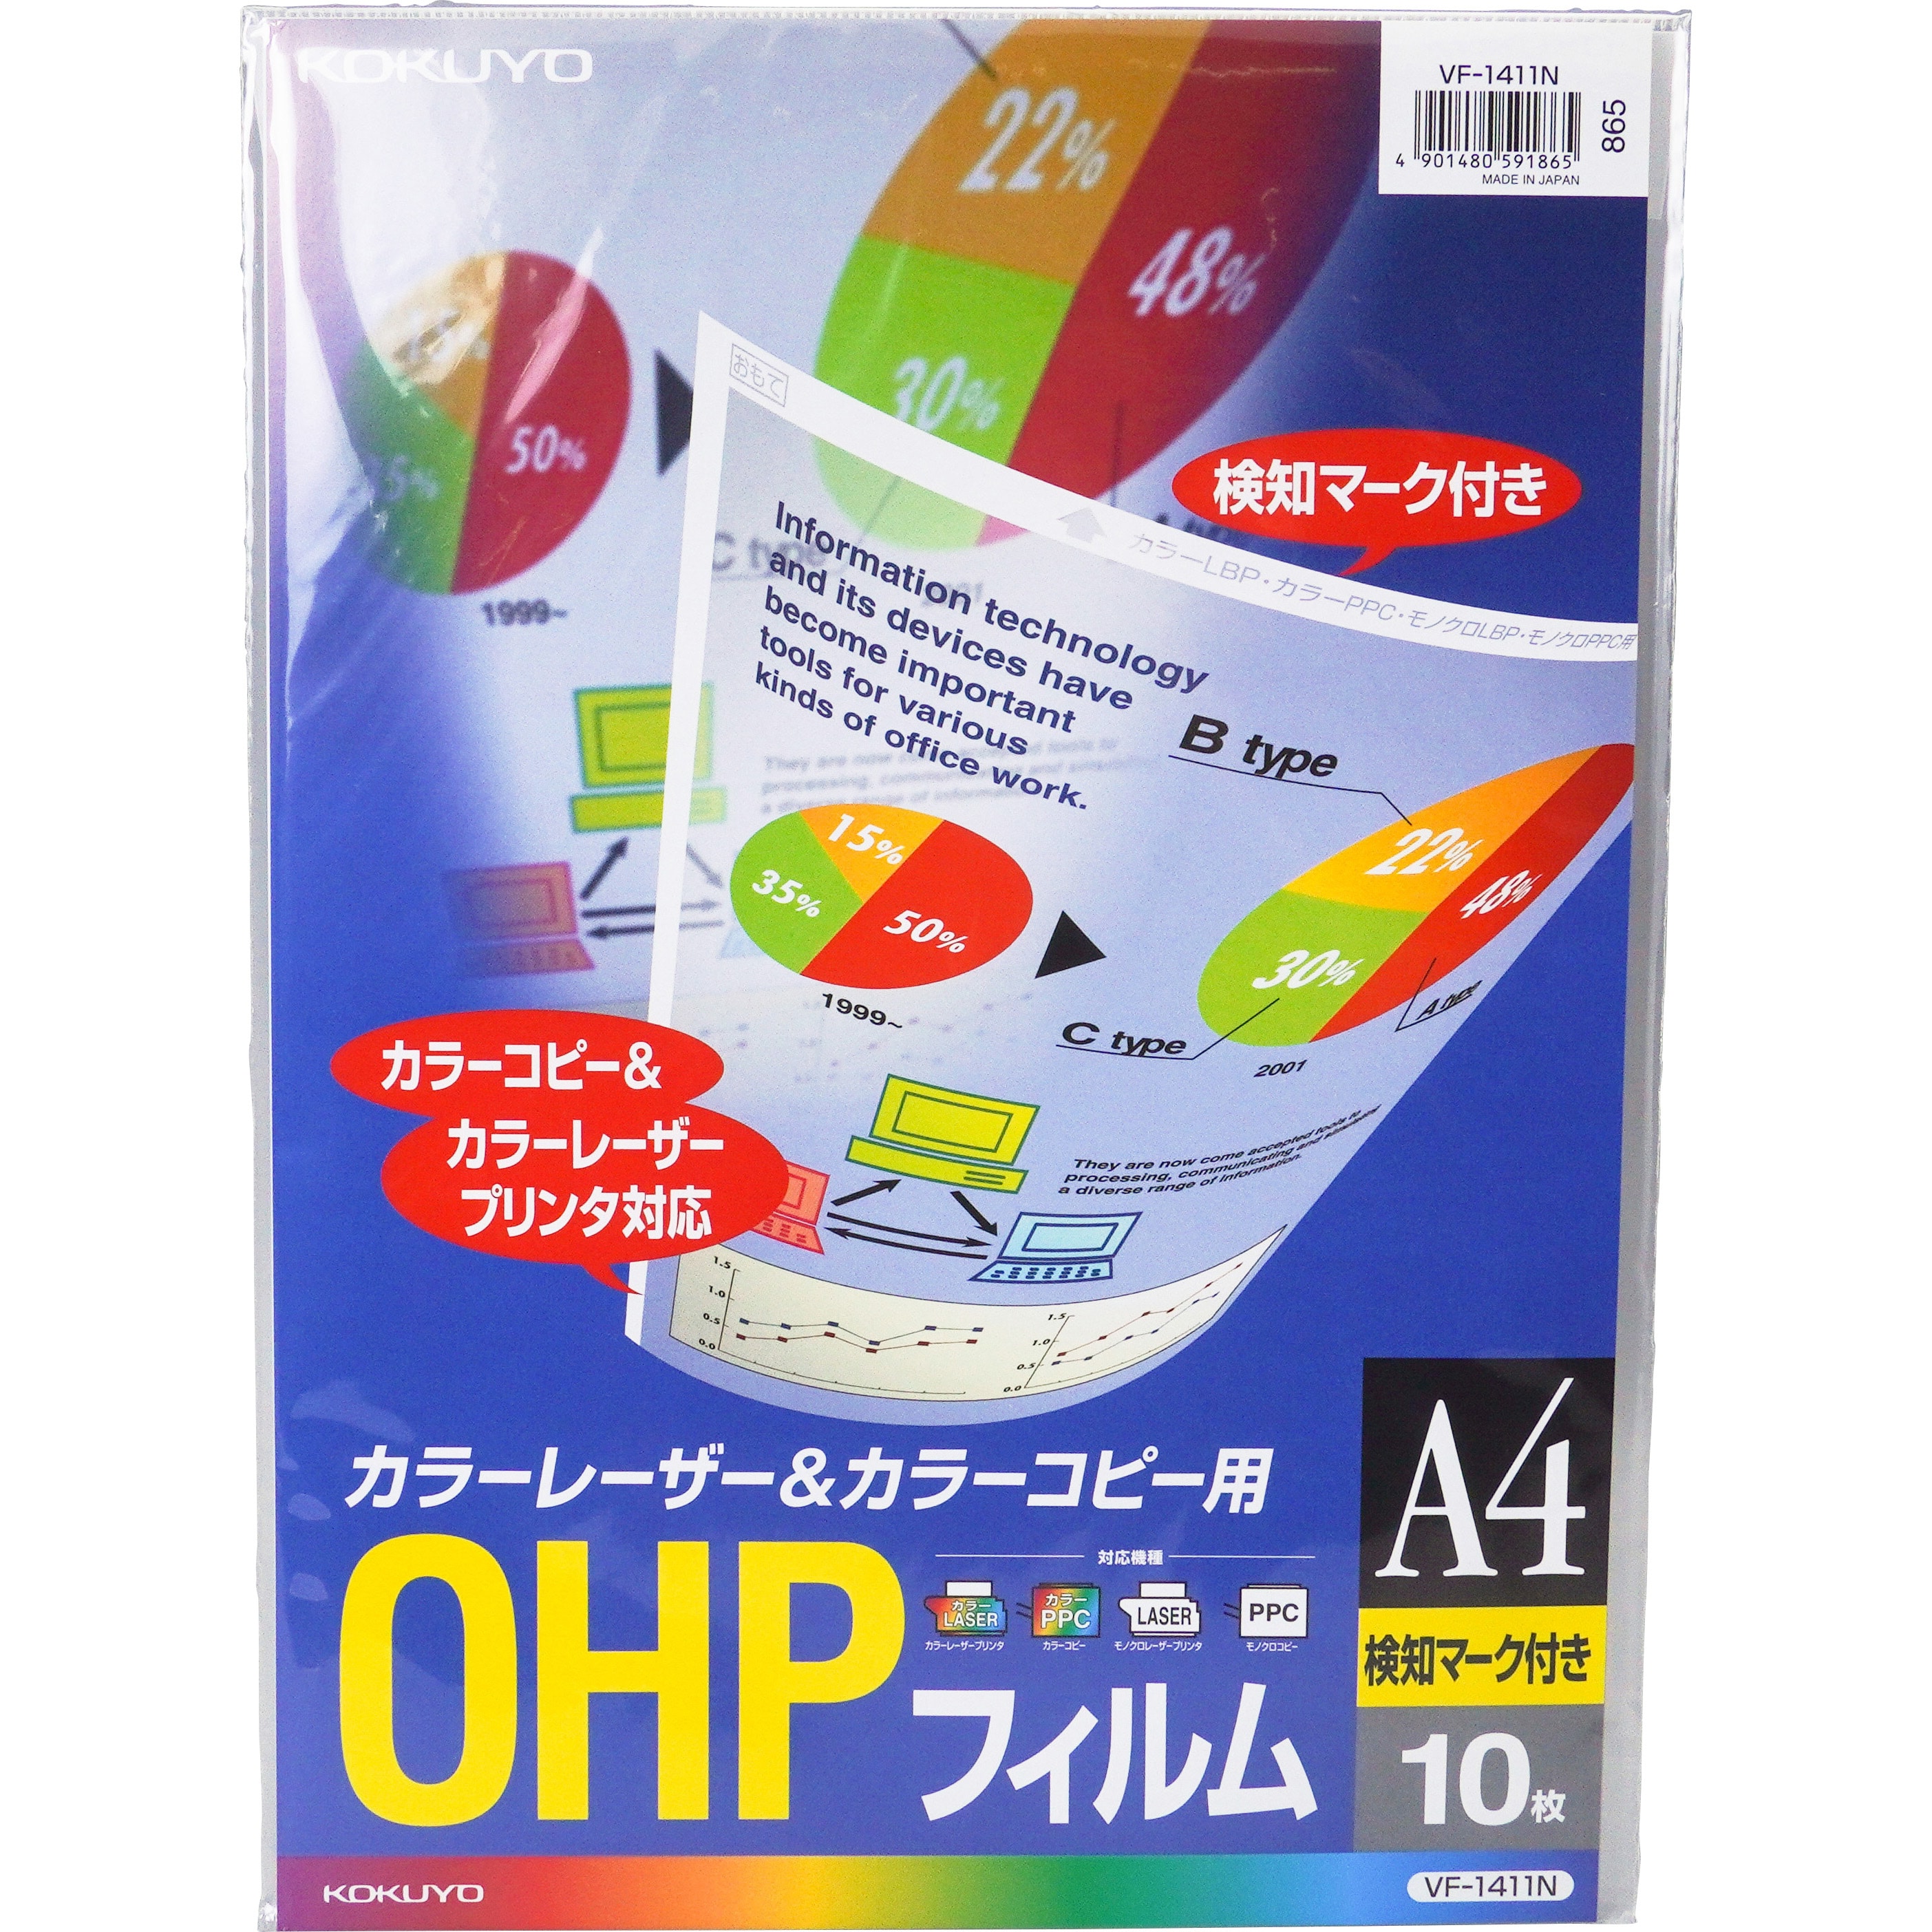 コクヨ OHPフィルム インクジェットプリンタ用 A4 10枚 VF-1101N まとめ買い3冊セット - 2